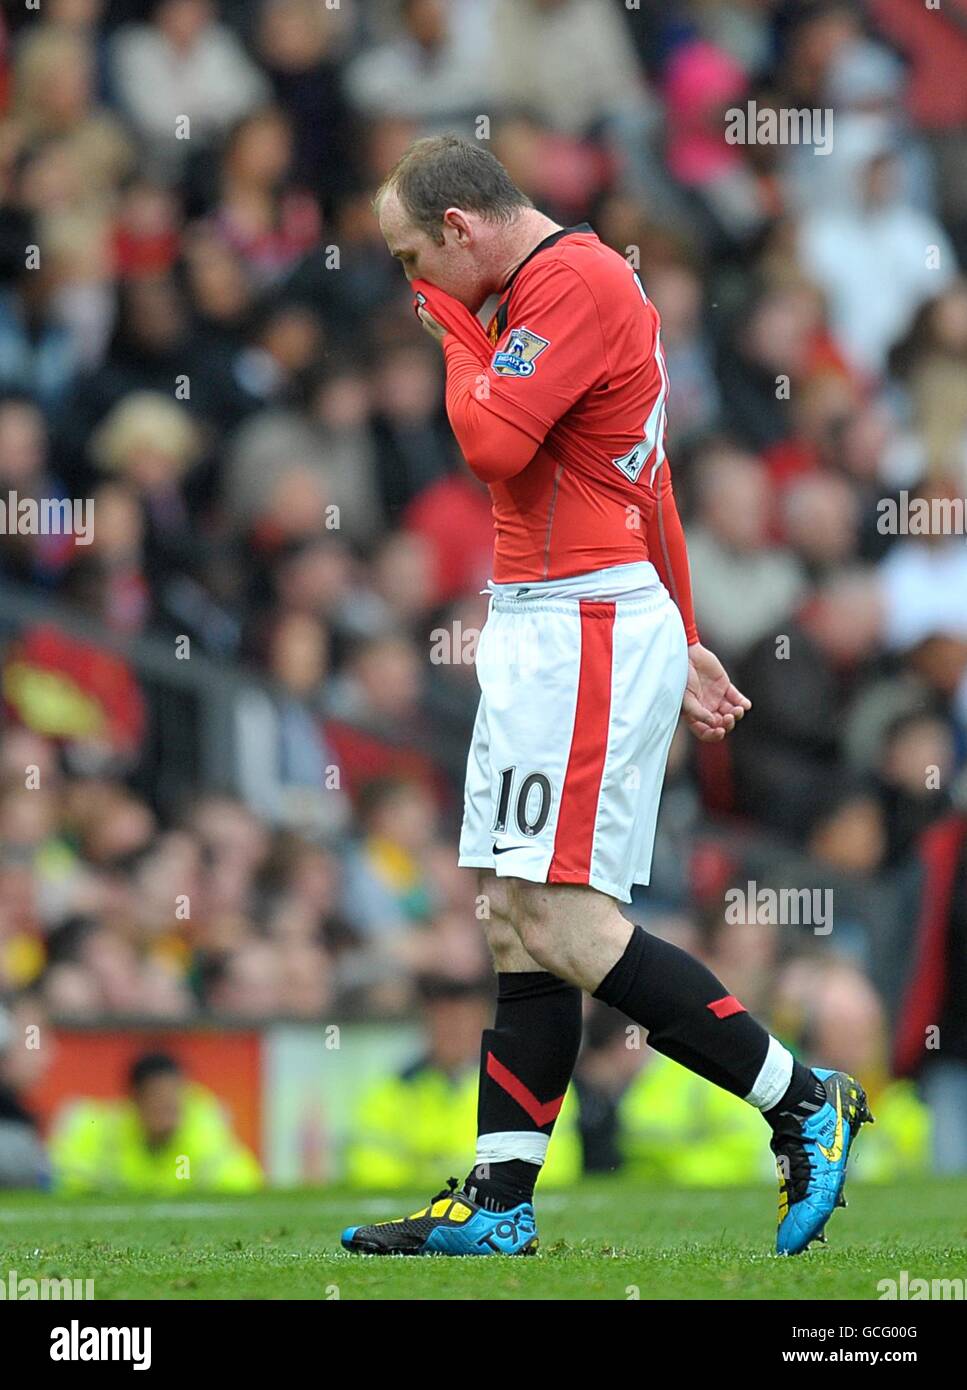 Fußball - Barclays Premier League - Manchester United / Stoke City - Old Trafford. Wayne Rooney von Manchester United verlässt das Spielfeld mit einer Leistenverletzung Stockfoto